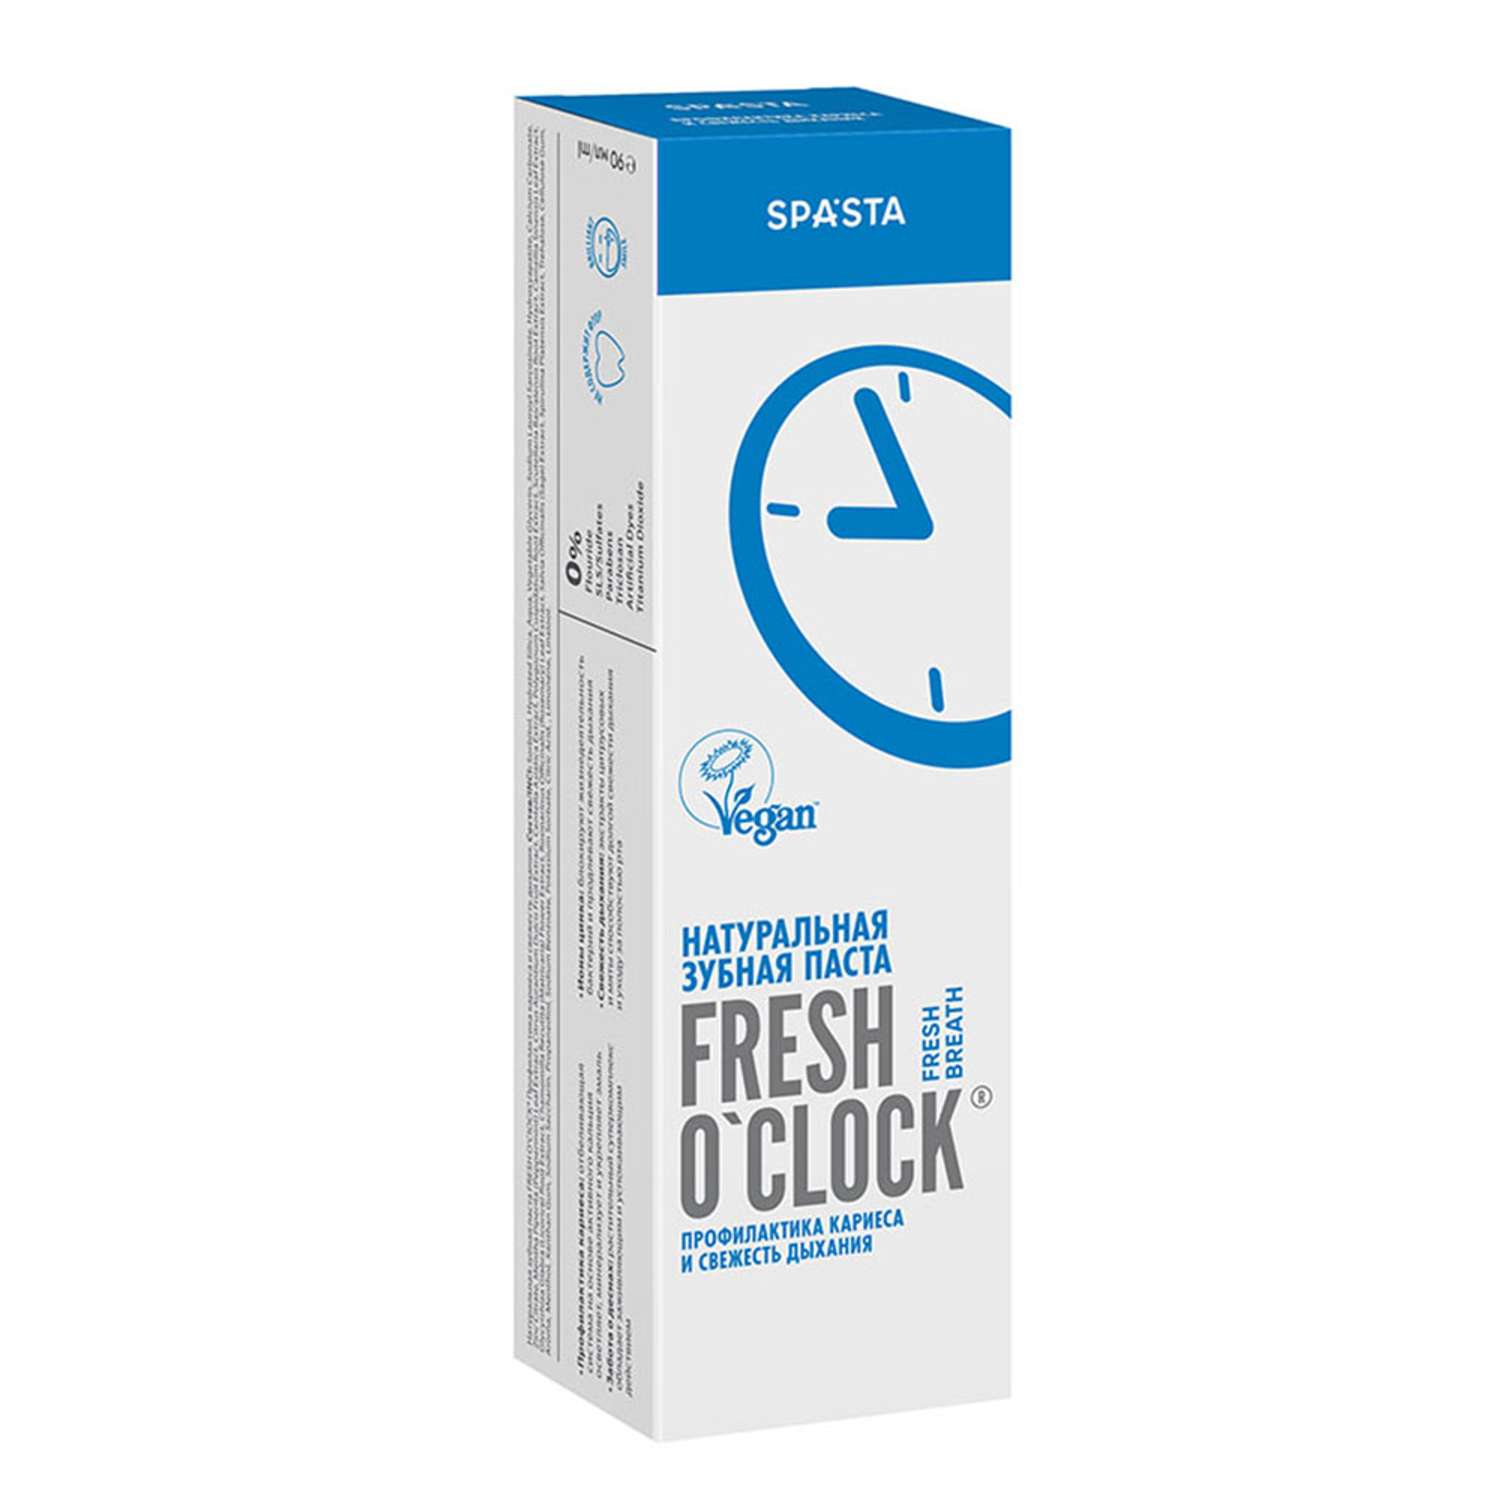 Натуральная зубная паста Spasta Fresh o’clock профилактика кариеса и свежесть дыхания 90 мл - фото 2